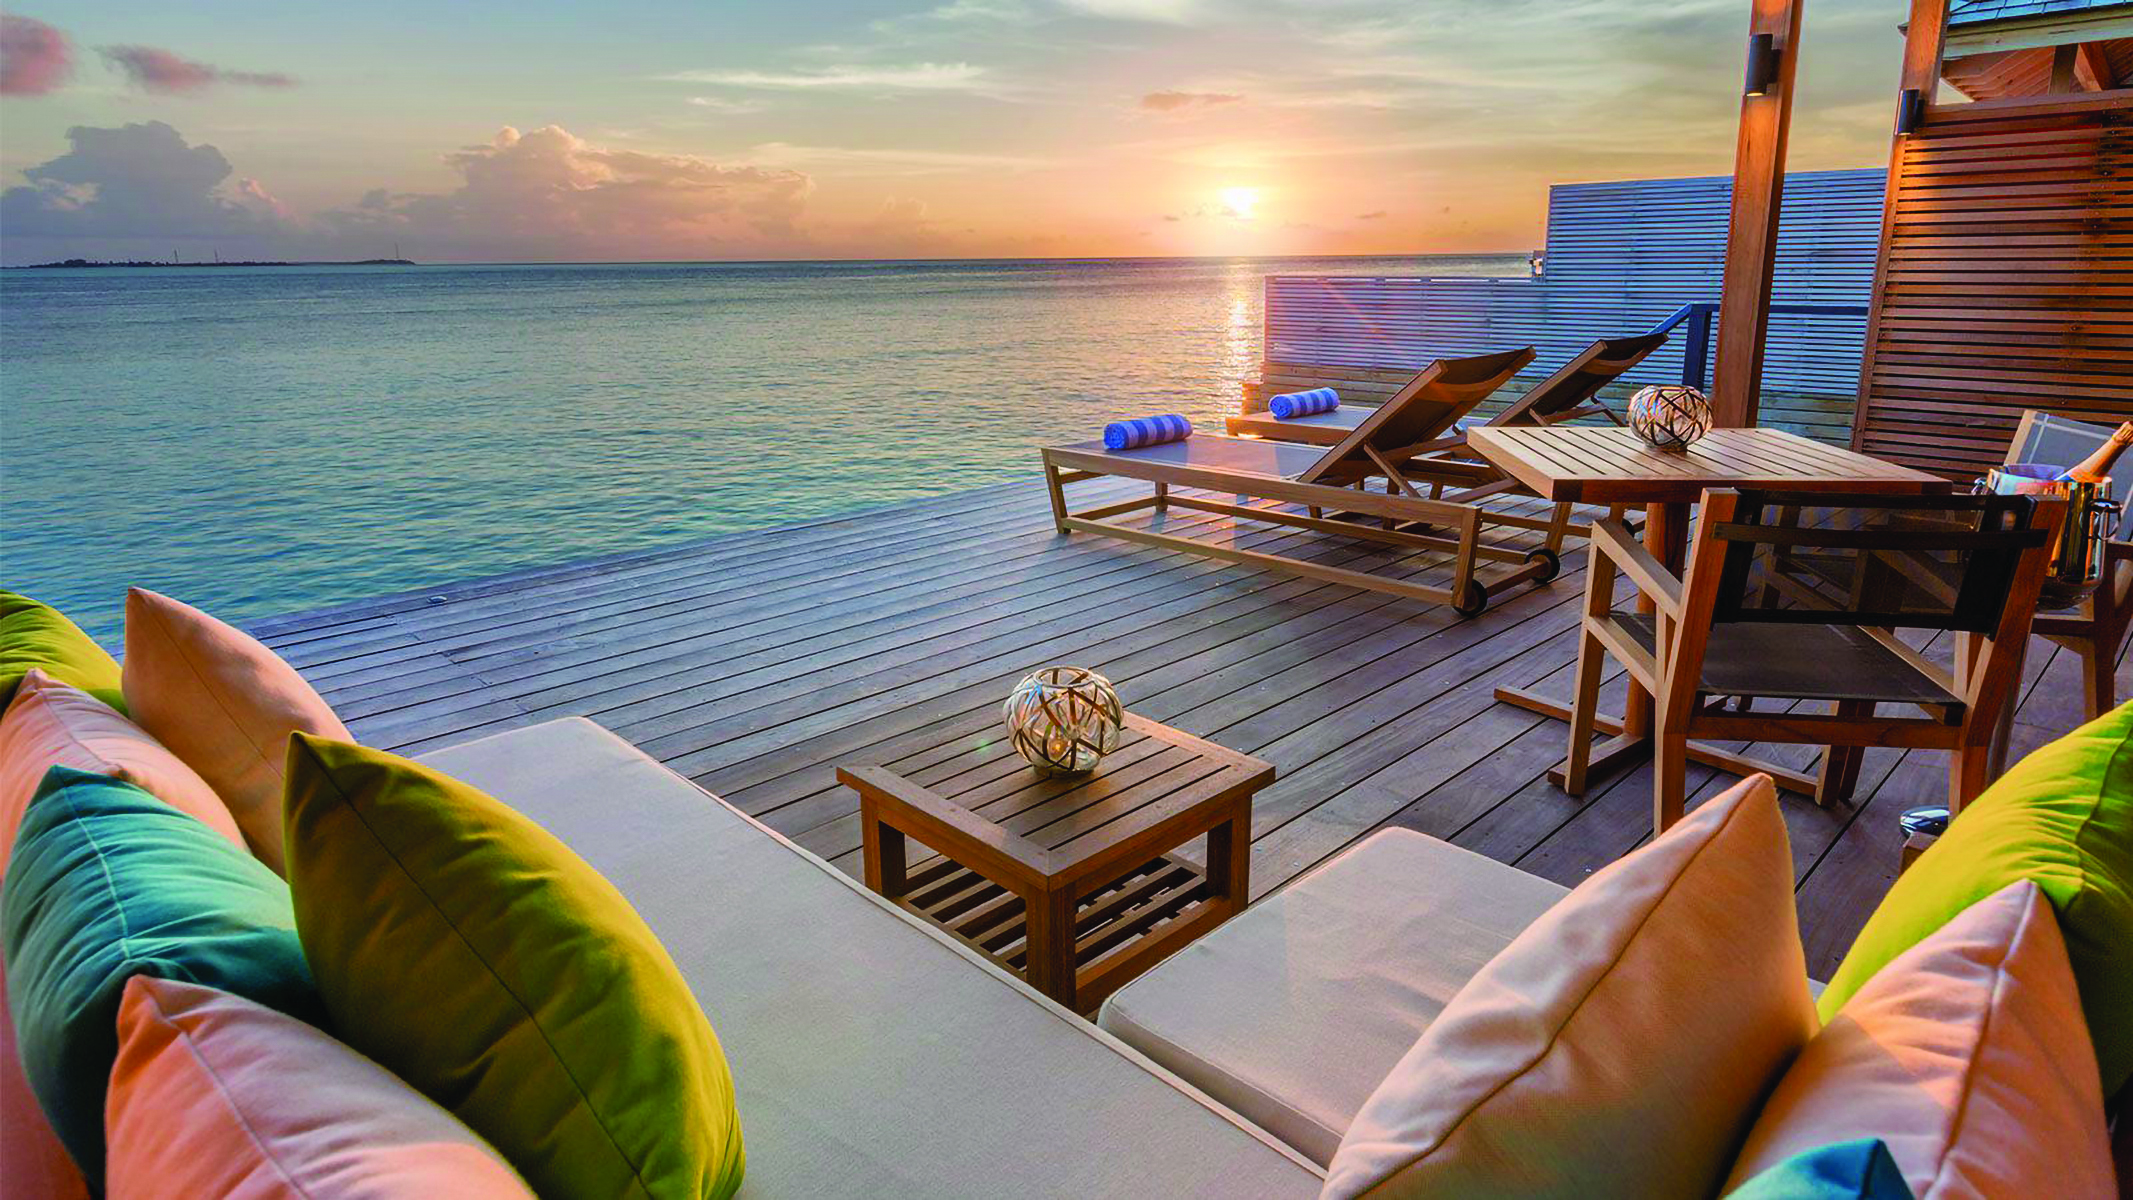 Терраса с видом на море. Hurawalhi Мальдивы отель. Остров Хуравальи Мальдивы. Hurawalhi Maldives 5* Resort 5. Hurawalhi Resort Maldives 5 тур.